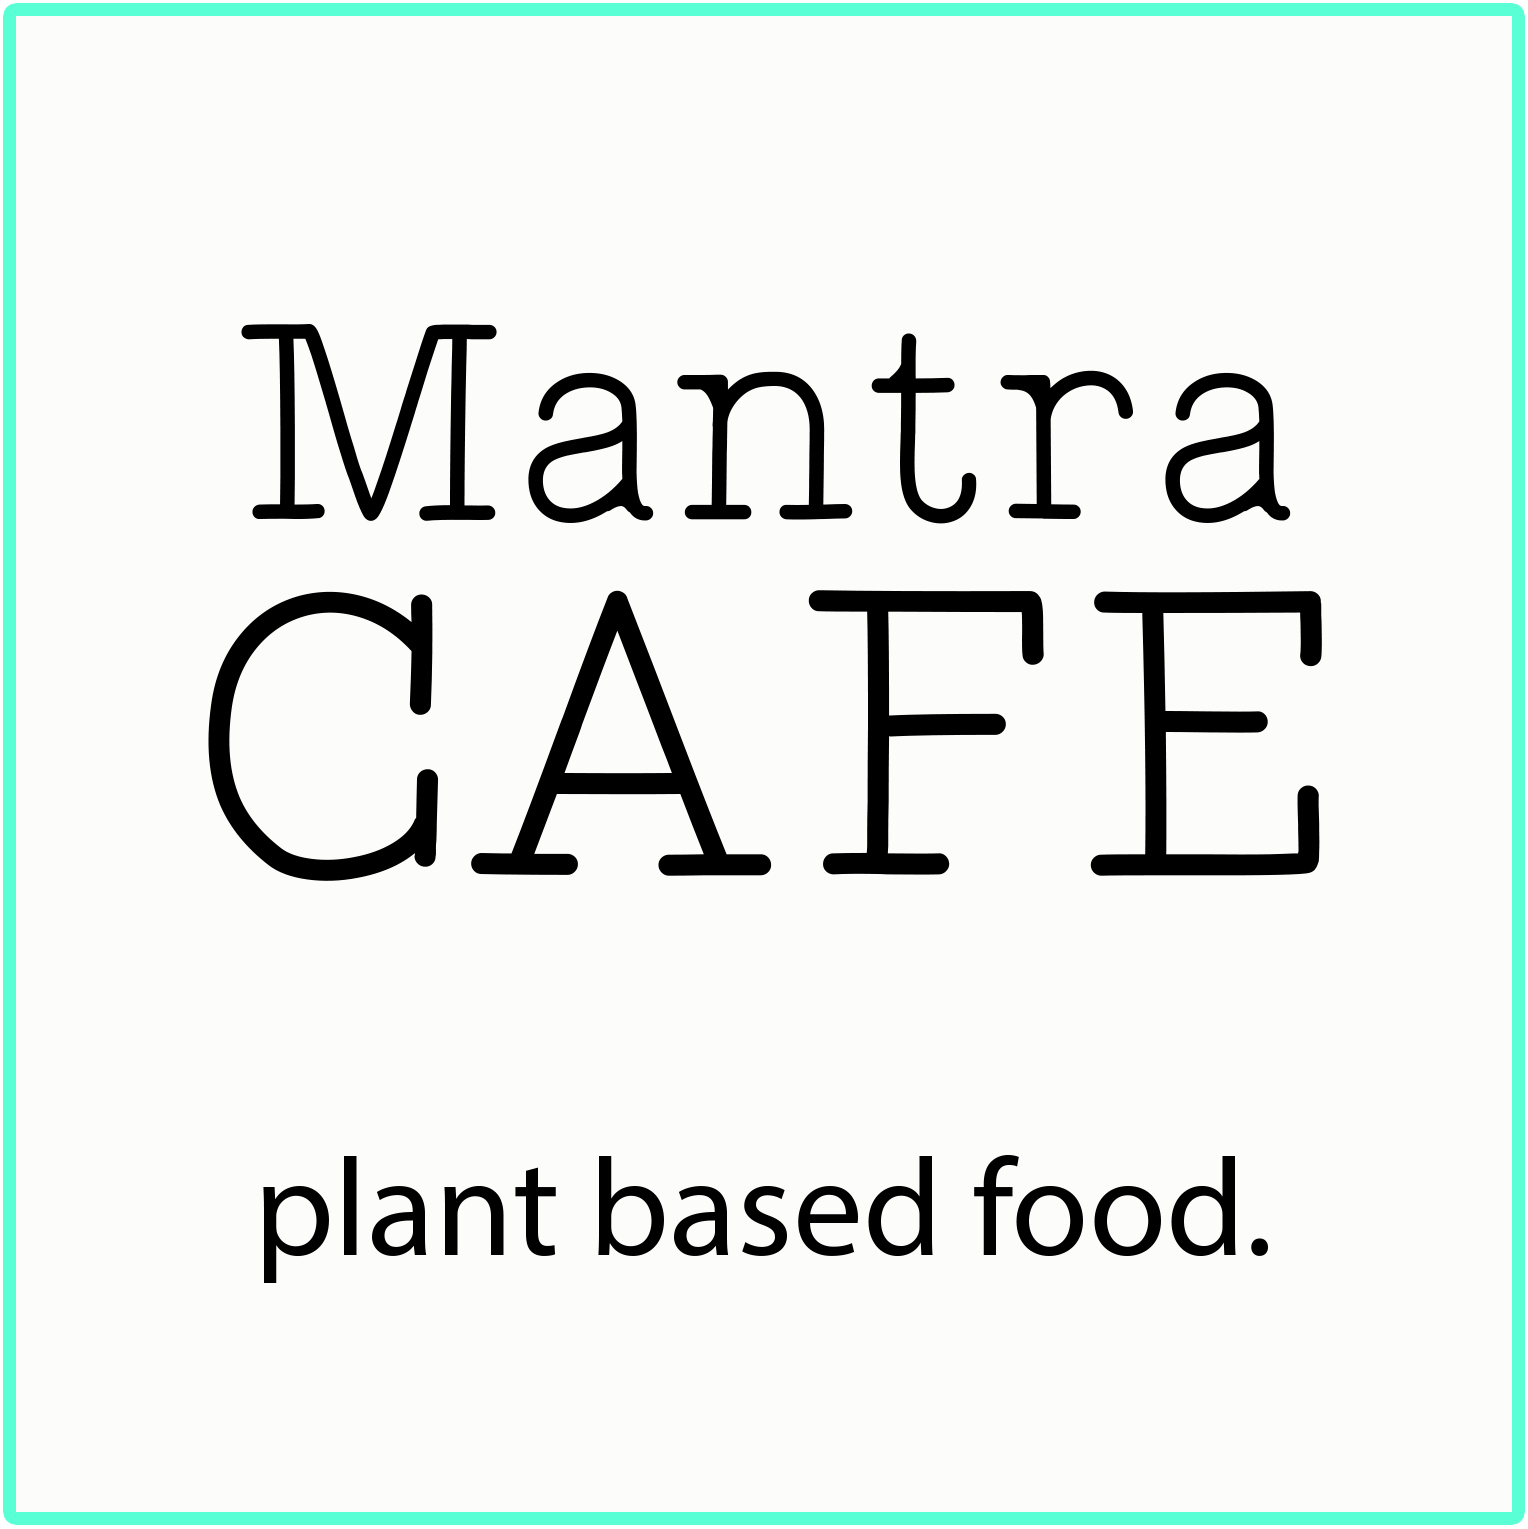 Mantra Cafe